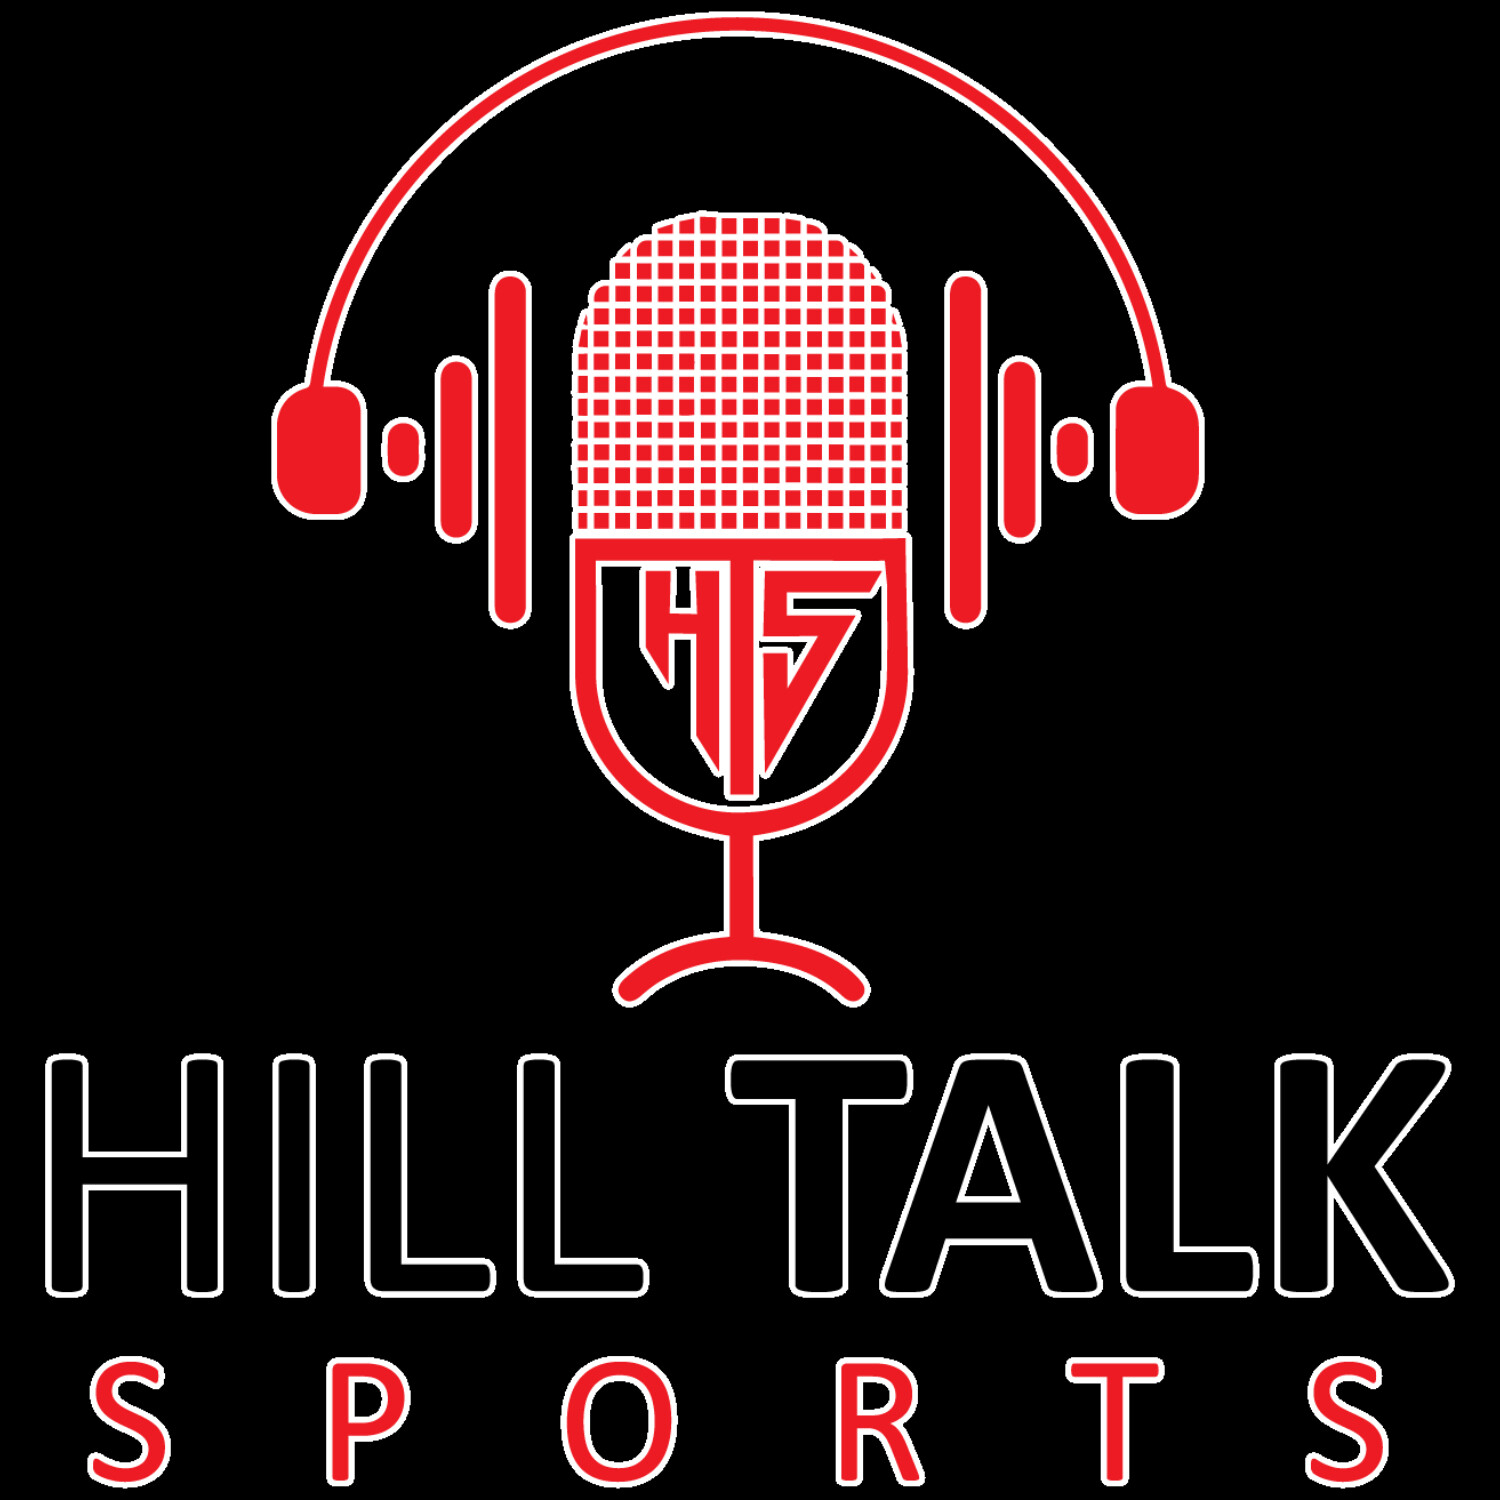 Hill Talk Sports